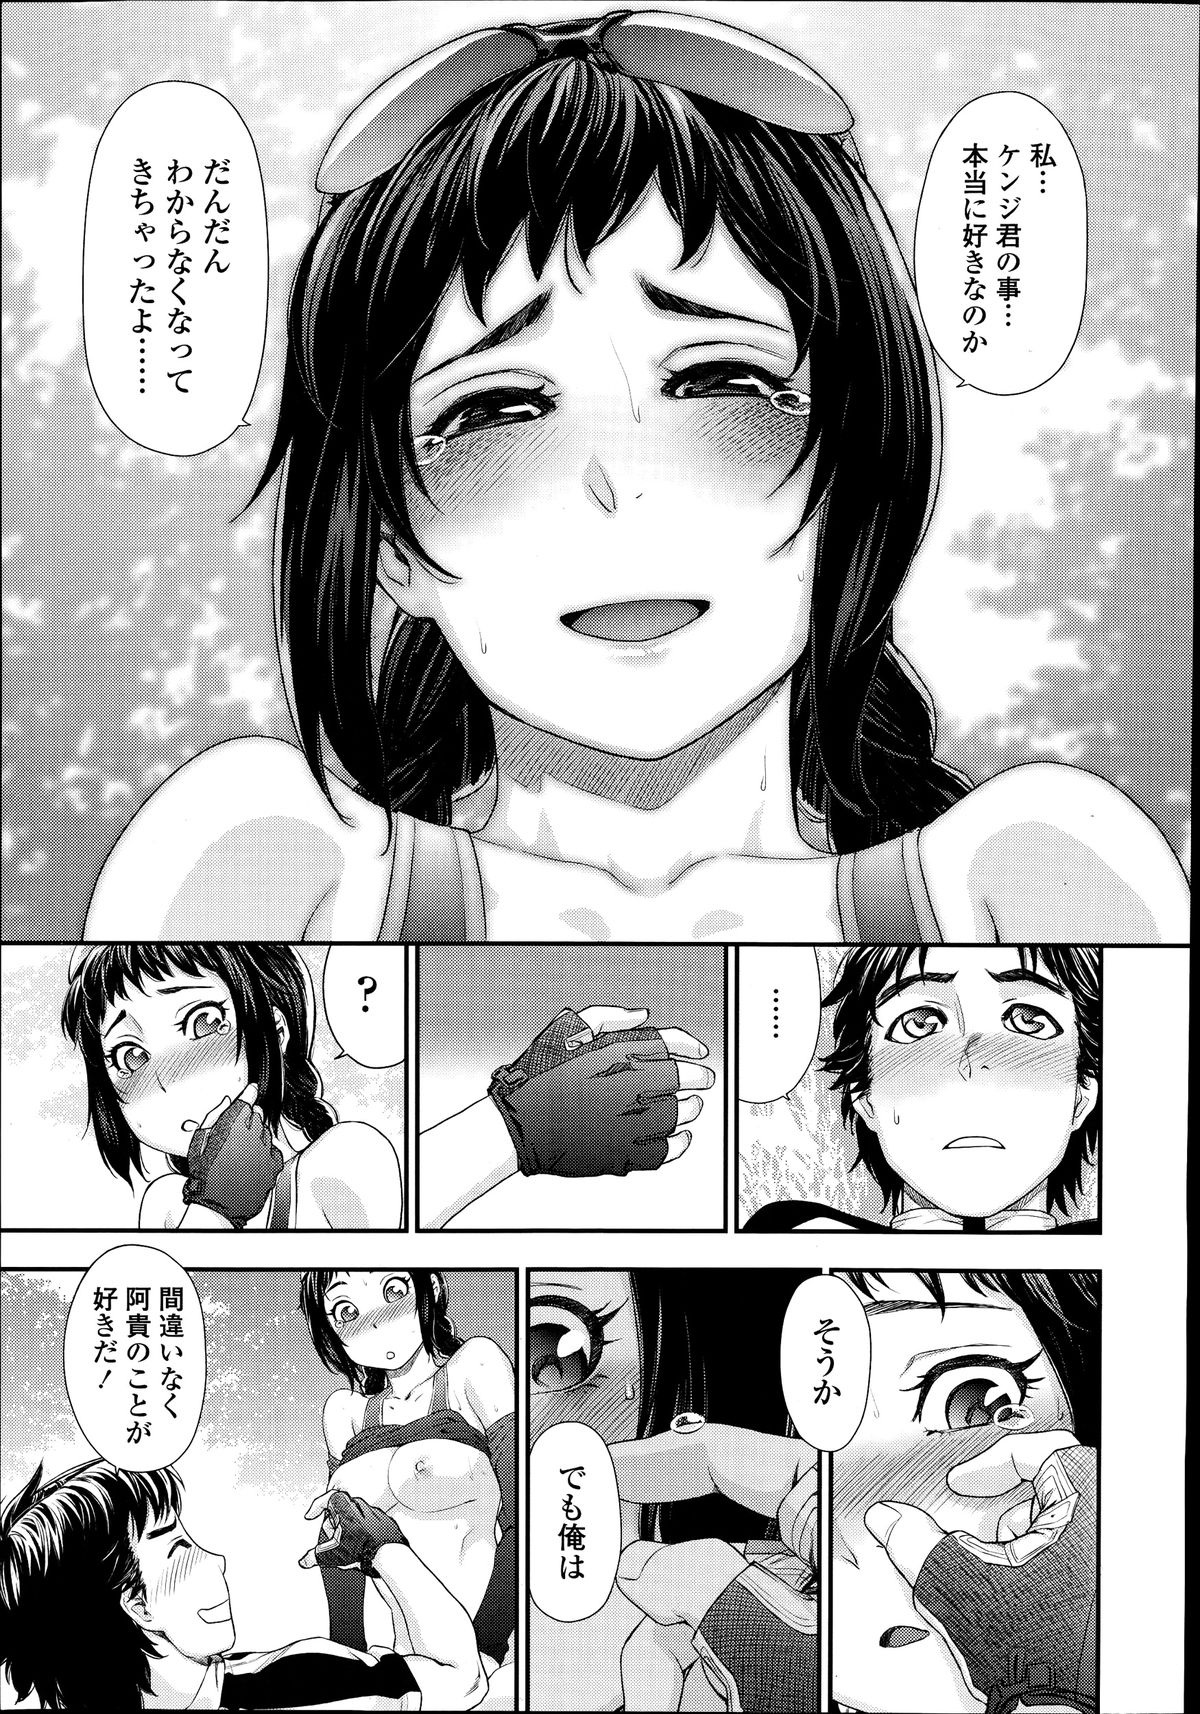 Yamatogawa Touch me if you can page 19 OkHentai